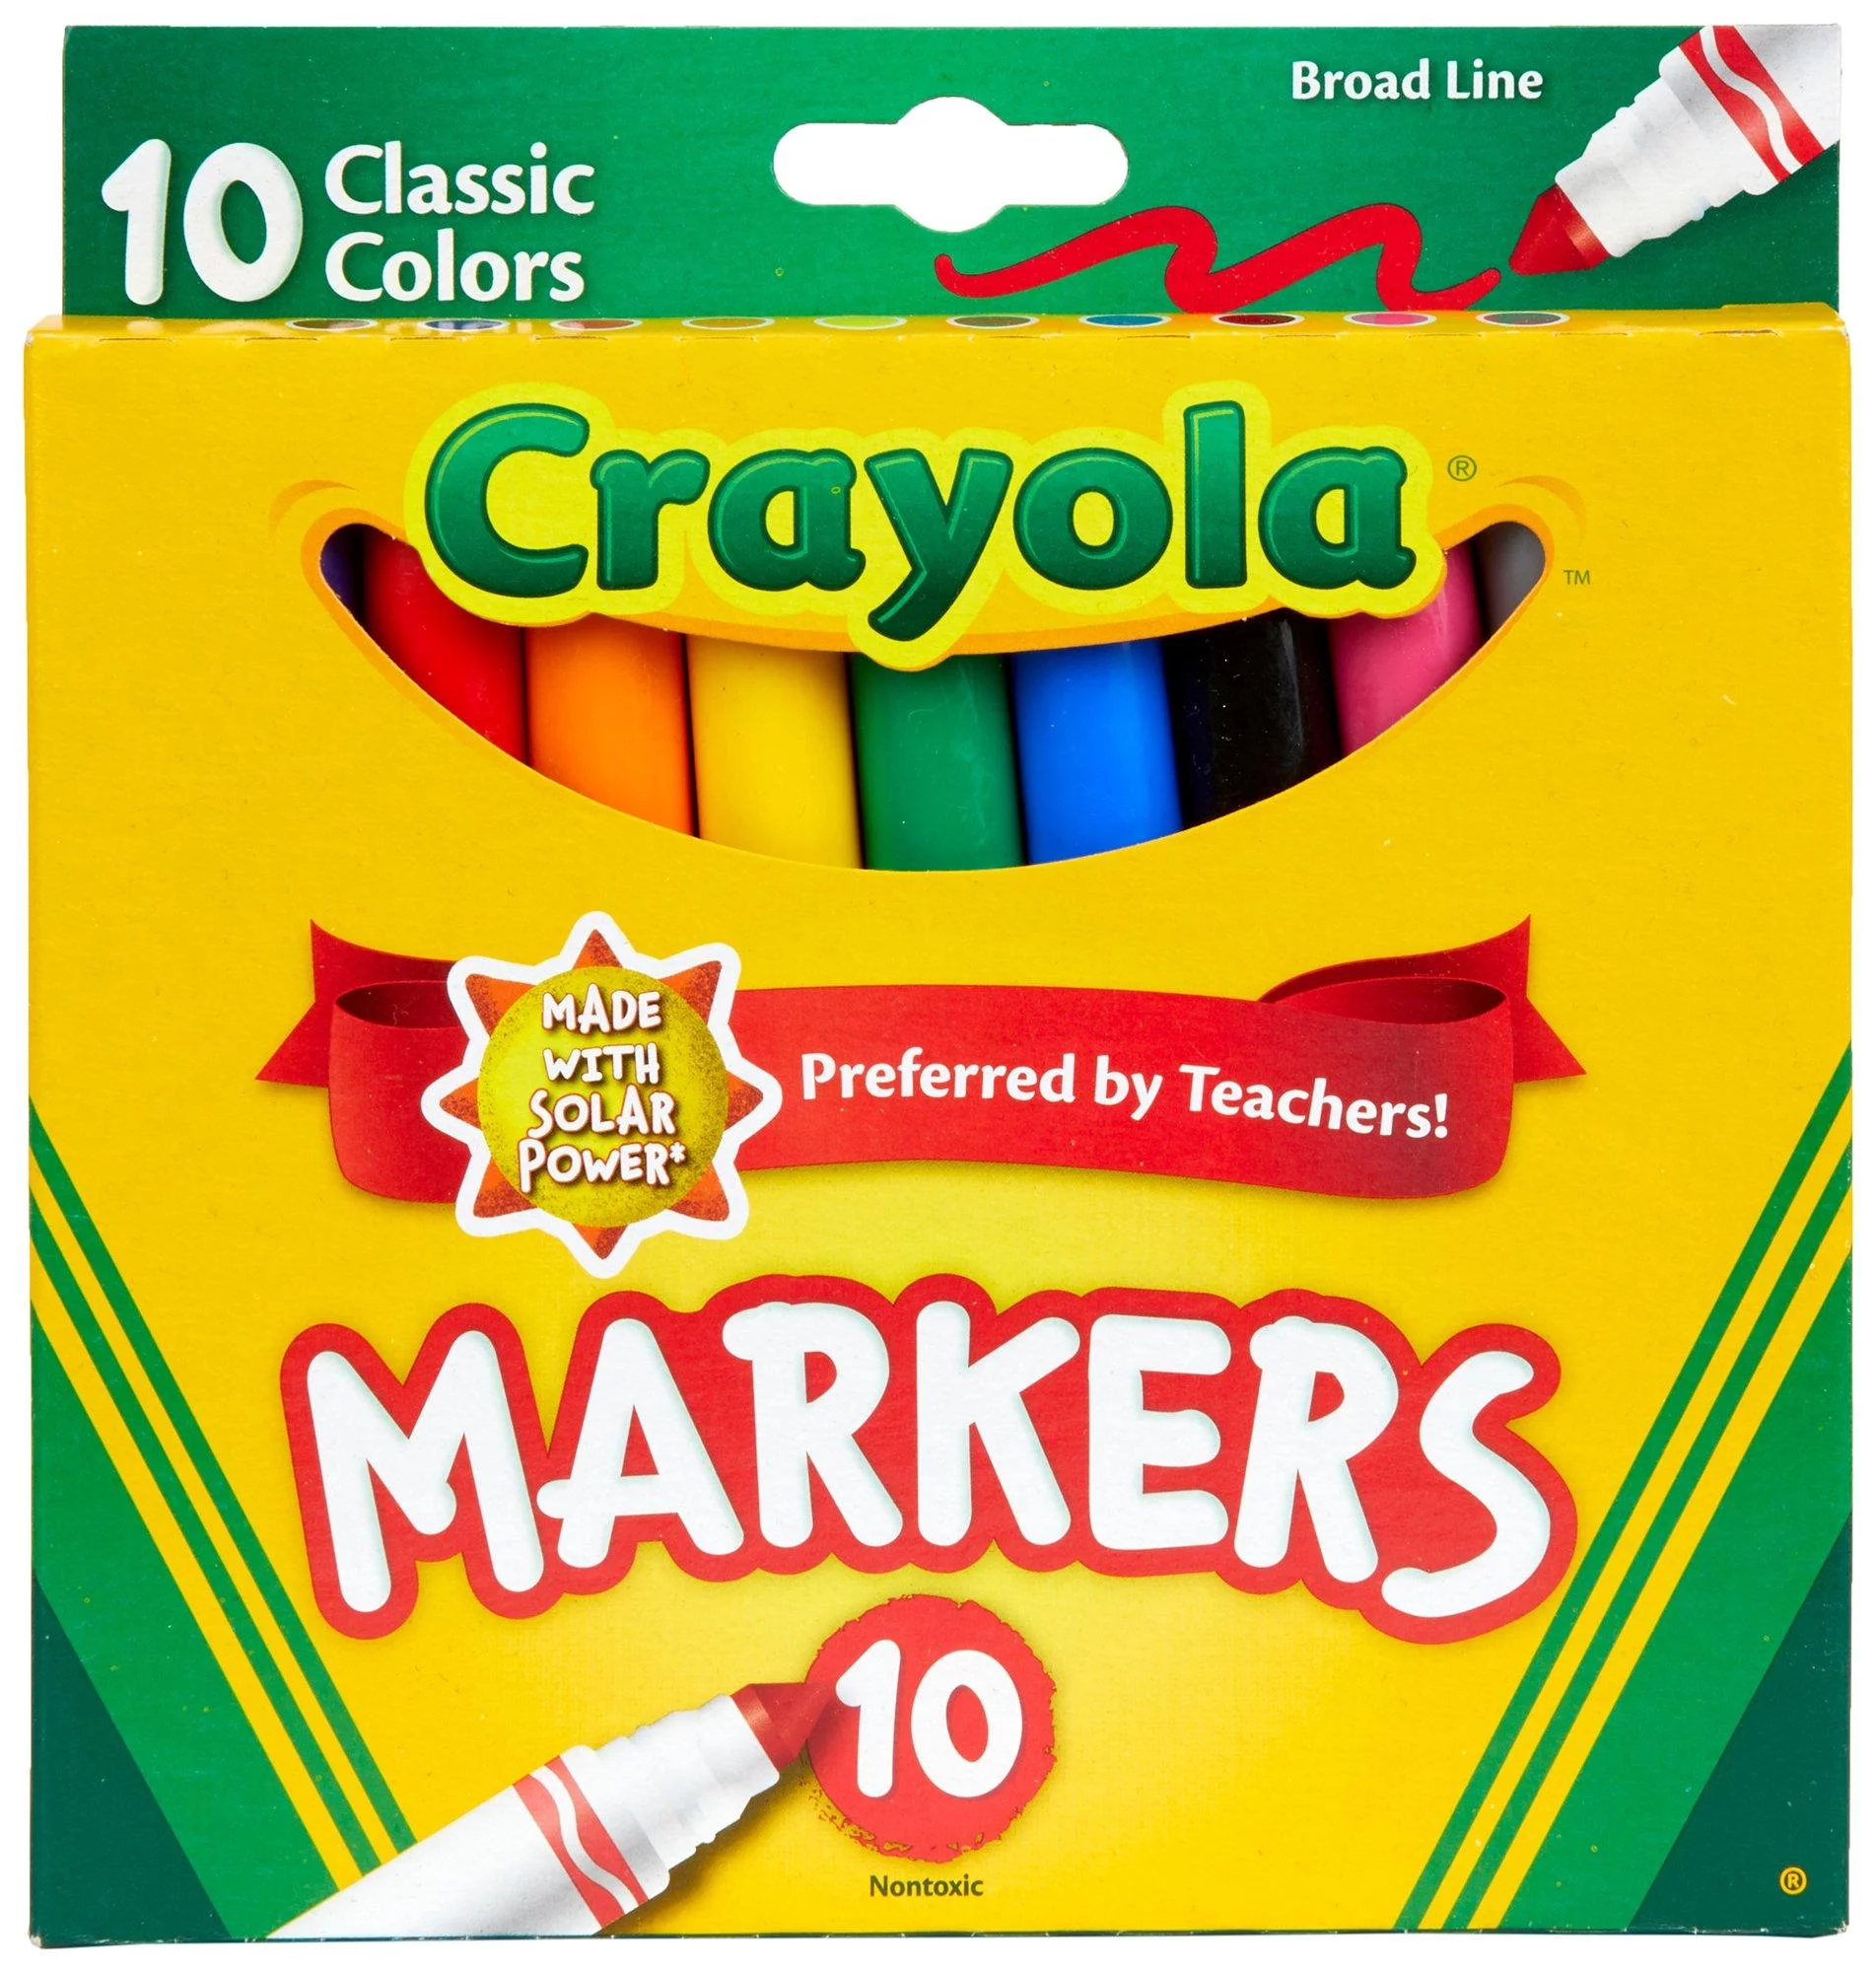 Crayola Broad Line Markers, 10 Ct, School Supplies for Kids, Teacher Supplies, Beginner Child